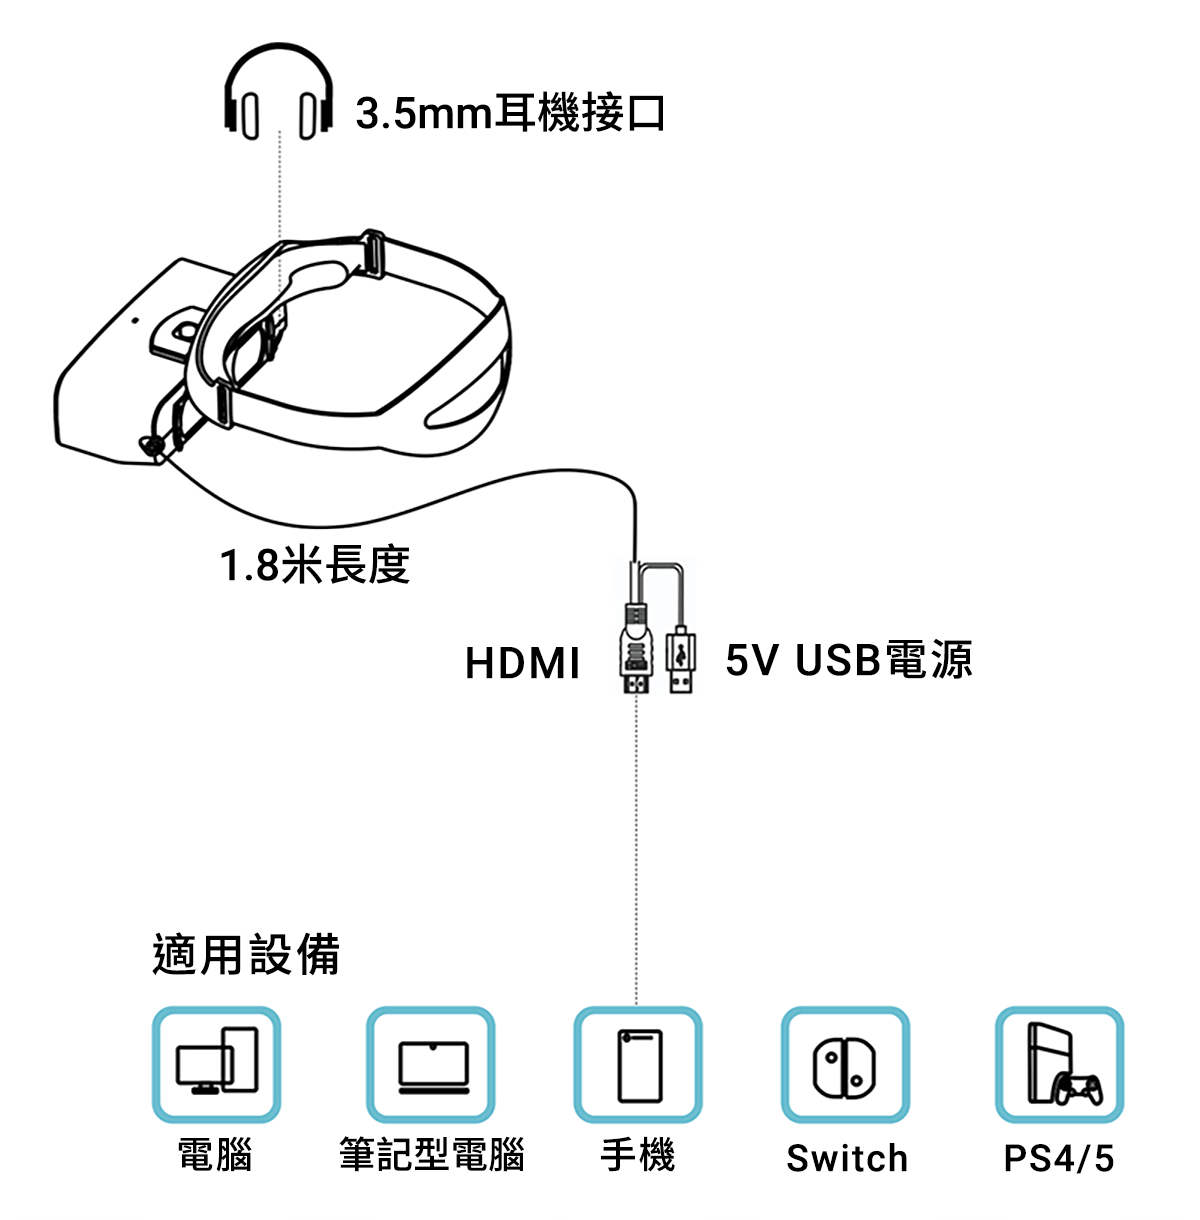 PT-X 800 吋頭戴顯示器– photontree